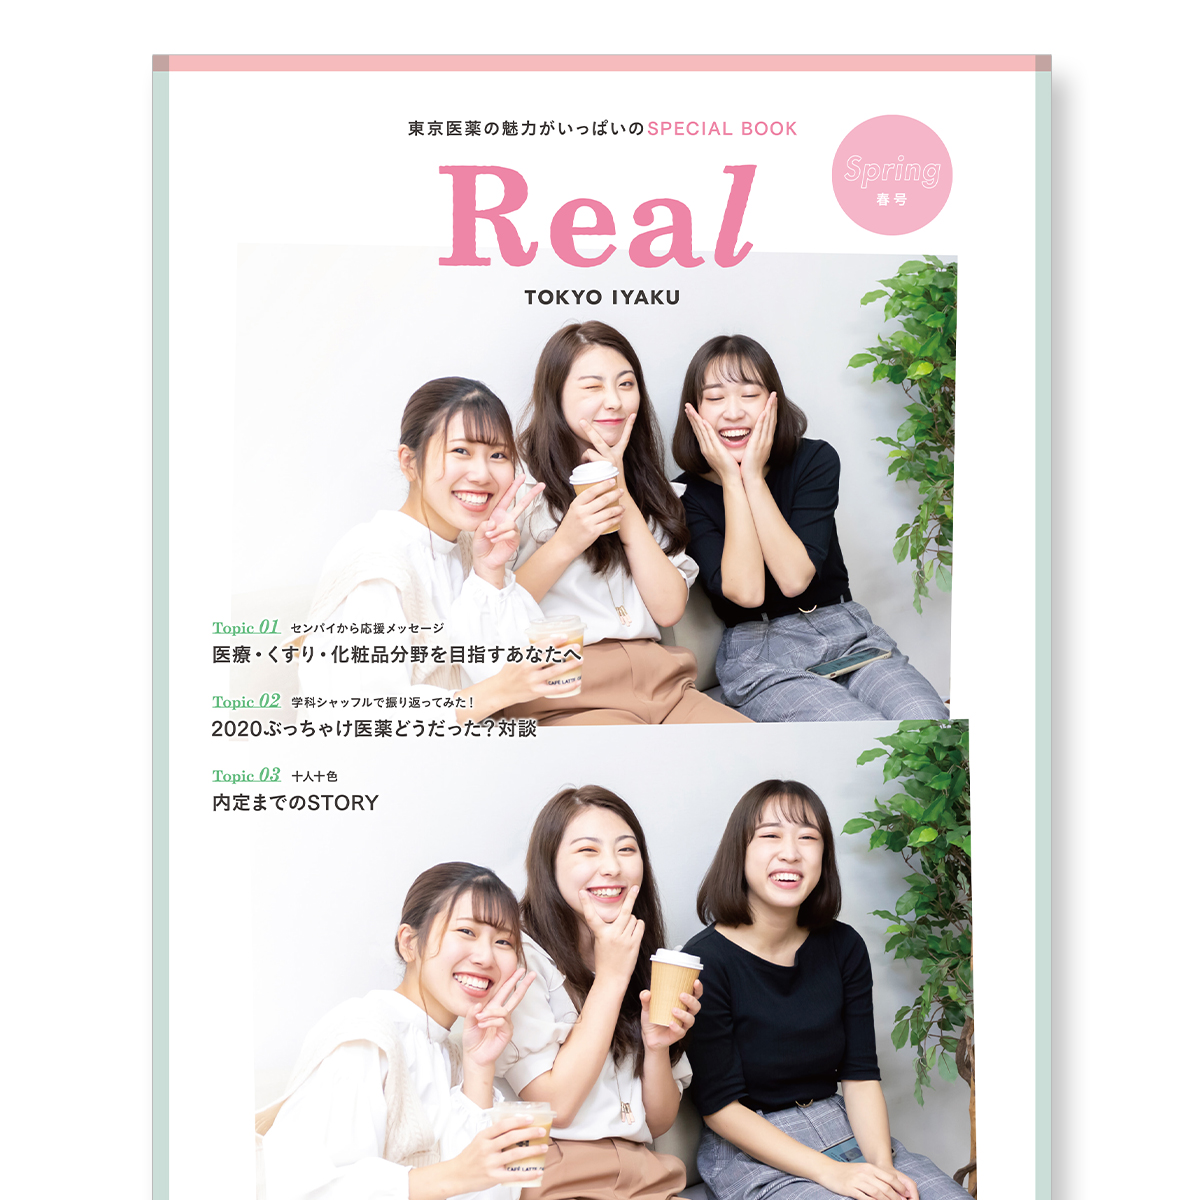 東京医薬の魅力がいっぱいのSPECIAL BOOK「Real TOKYO IYAKU【春号】」